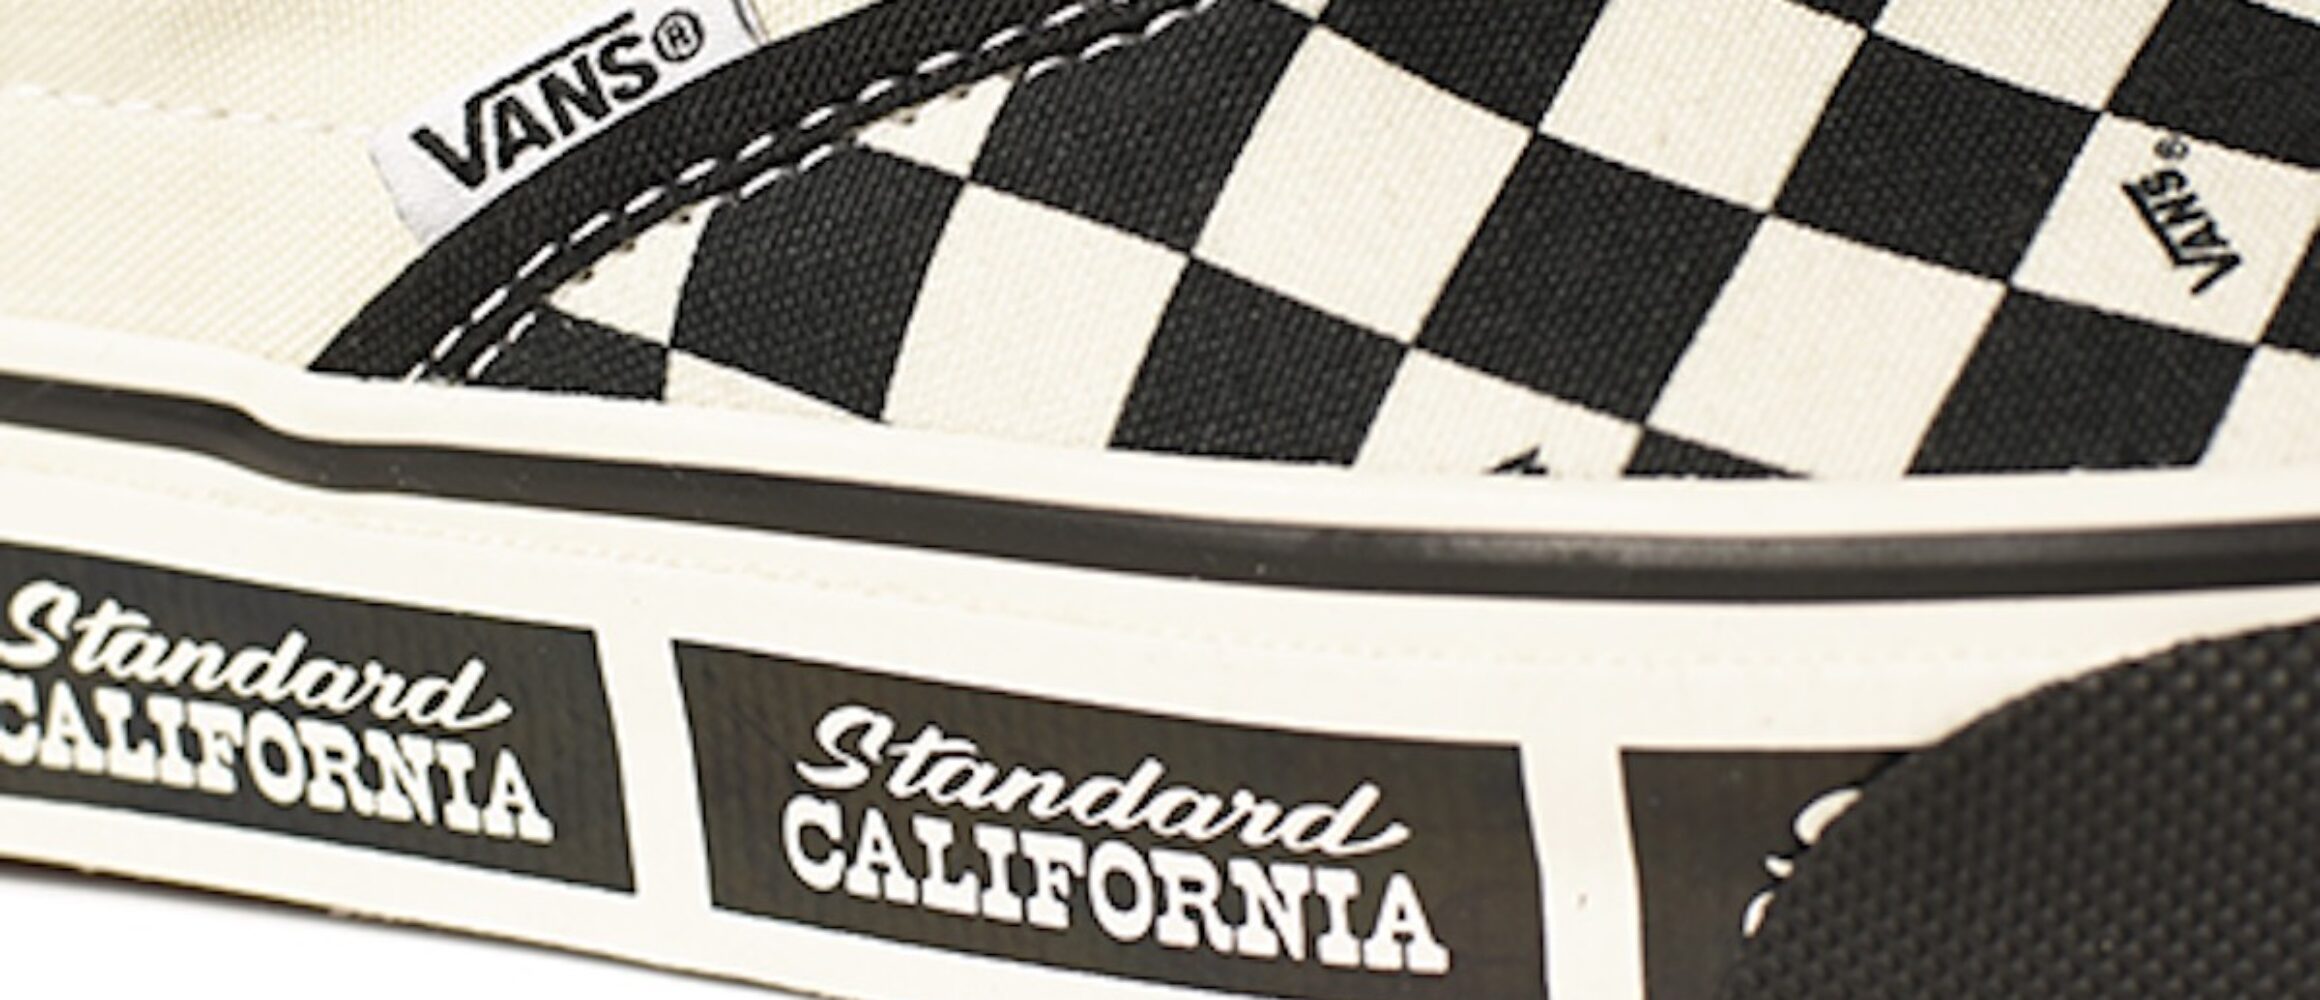 STANDARD CALIFORNIA vans 20周年記念 コラボ - 靴